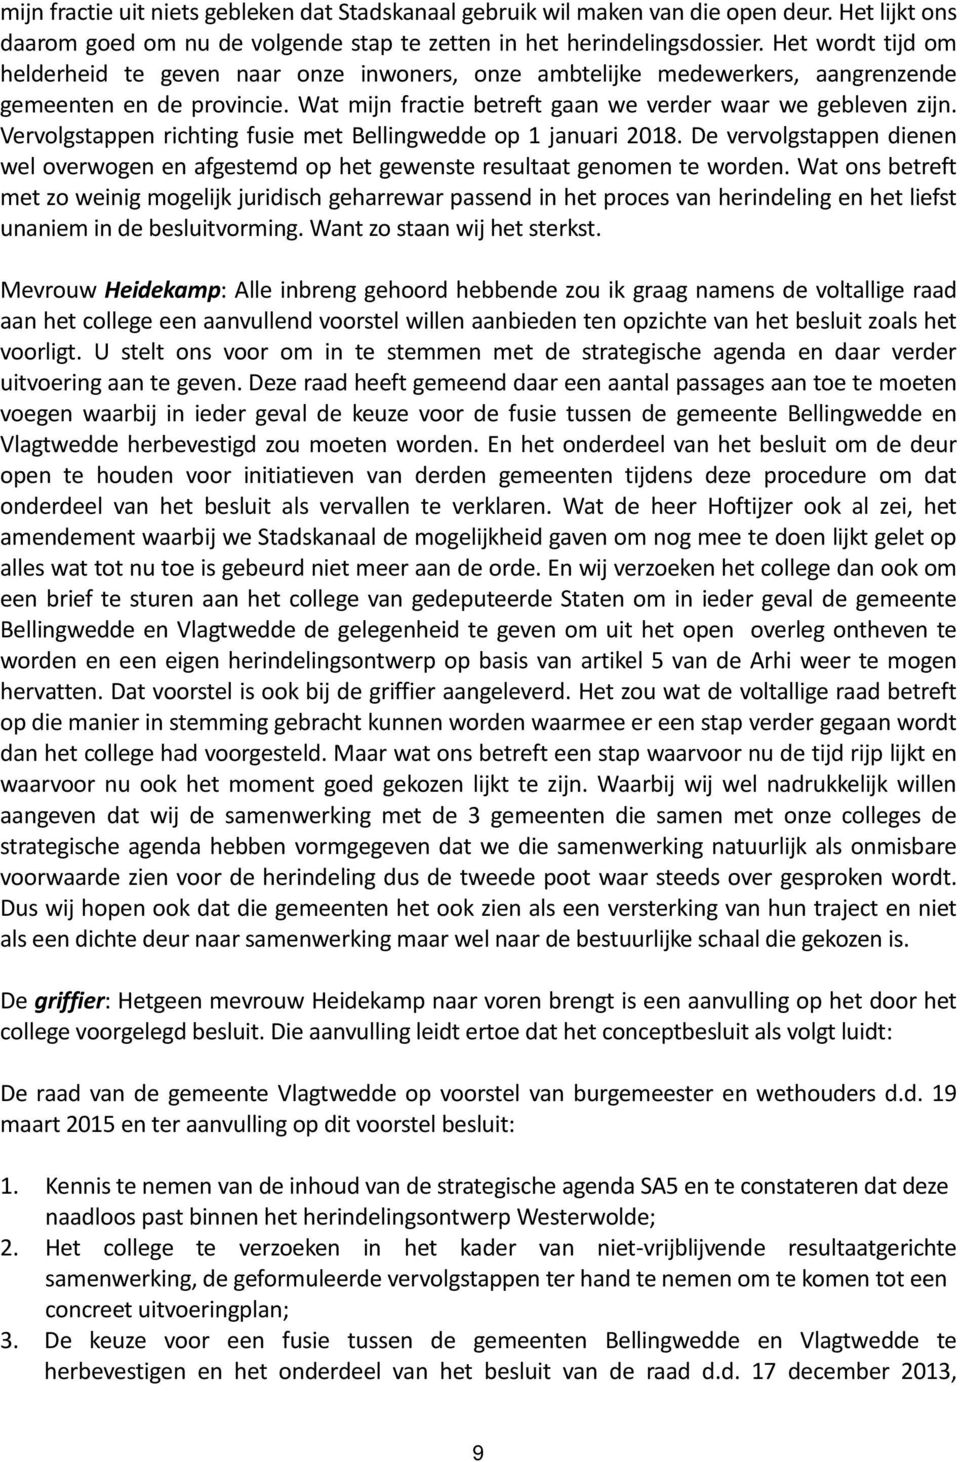 Vervolgstappen richting fusie met Bellingwedde op 1 januari 2018. De vervolgstappen dienen wel overwogen en afgestemd op het gewenste resultaat genomen te worden.